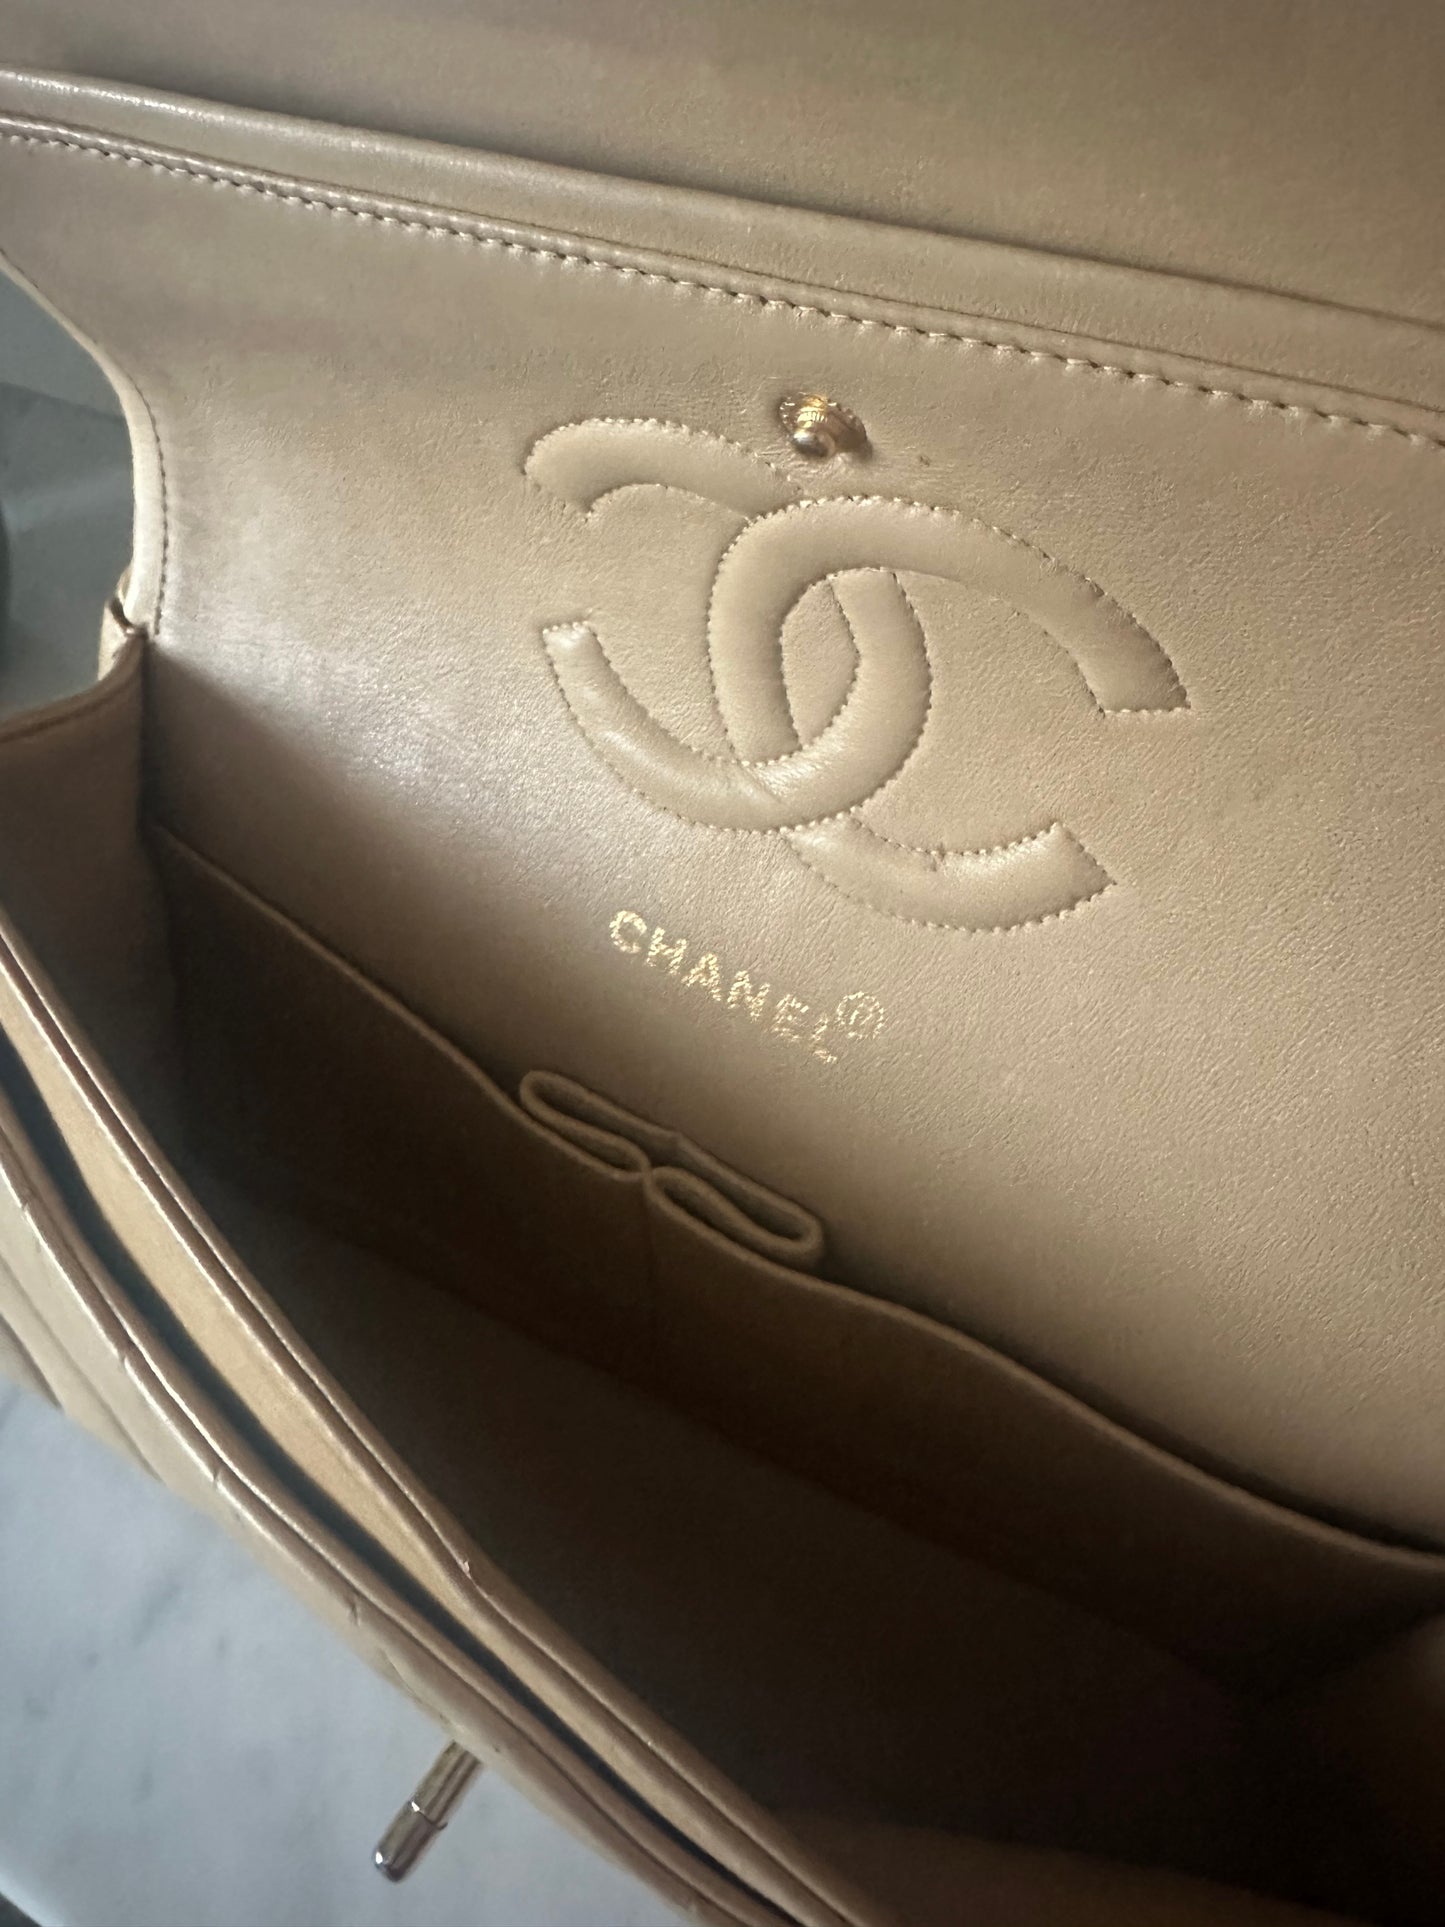 Chanel Classic flap